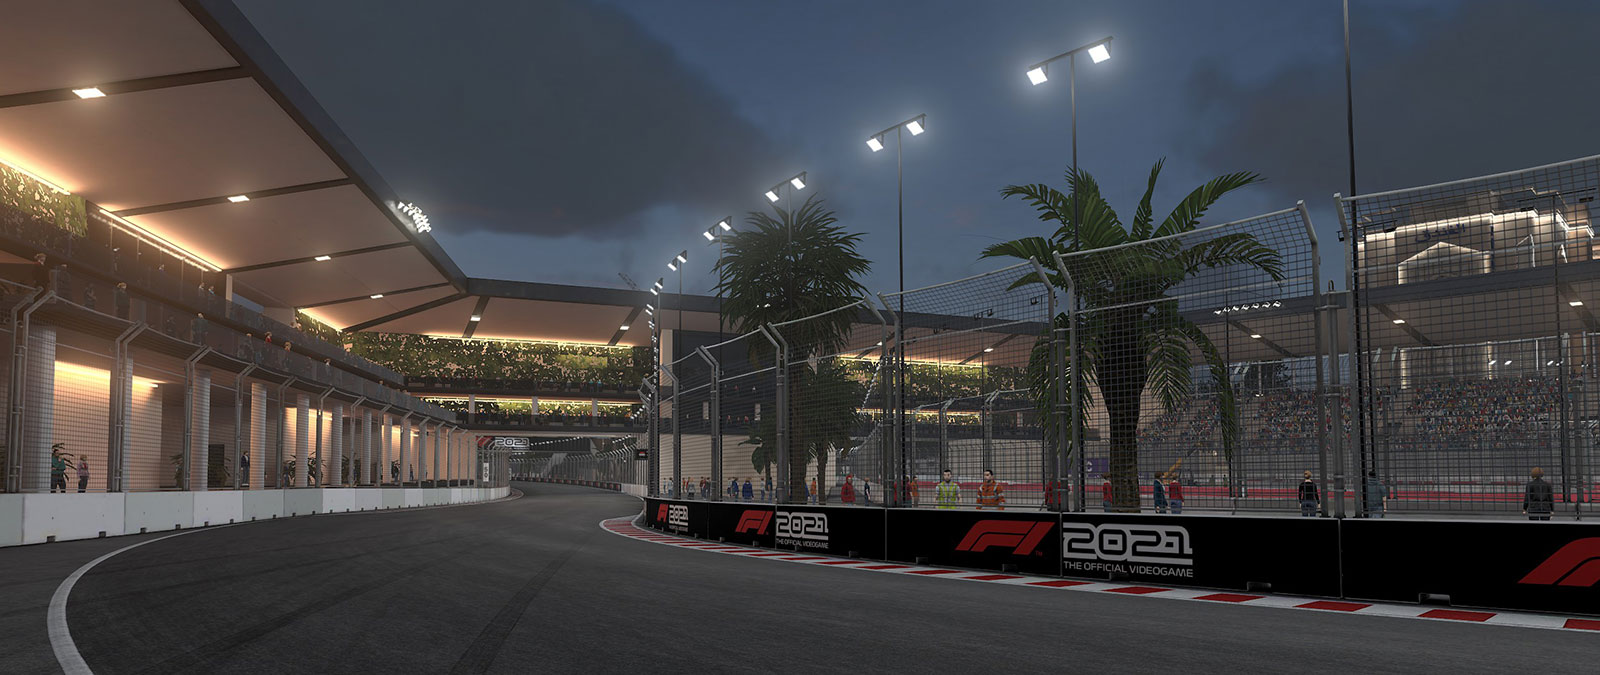 Trať F1 po západu slunce, zalitá světlem lamp a obklopená sledujícími diváky na tribunách.